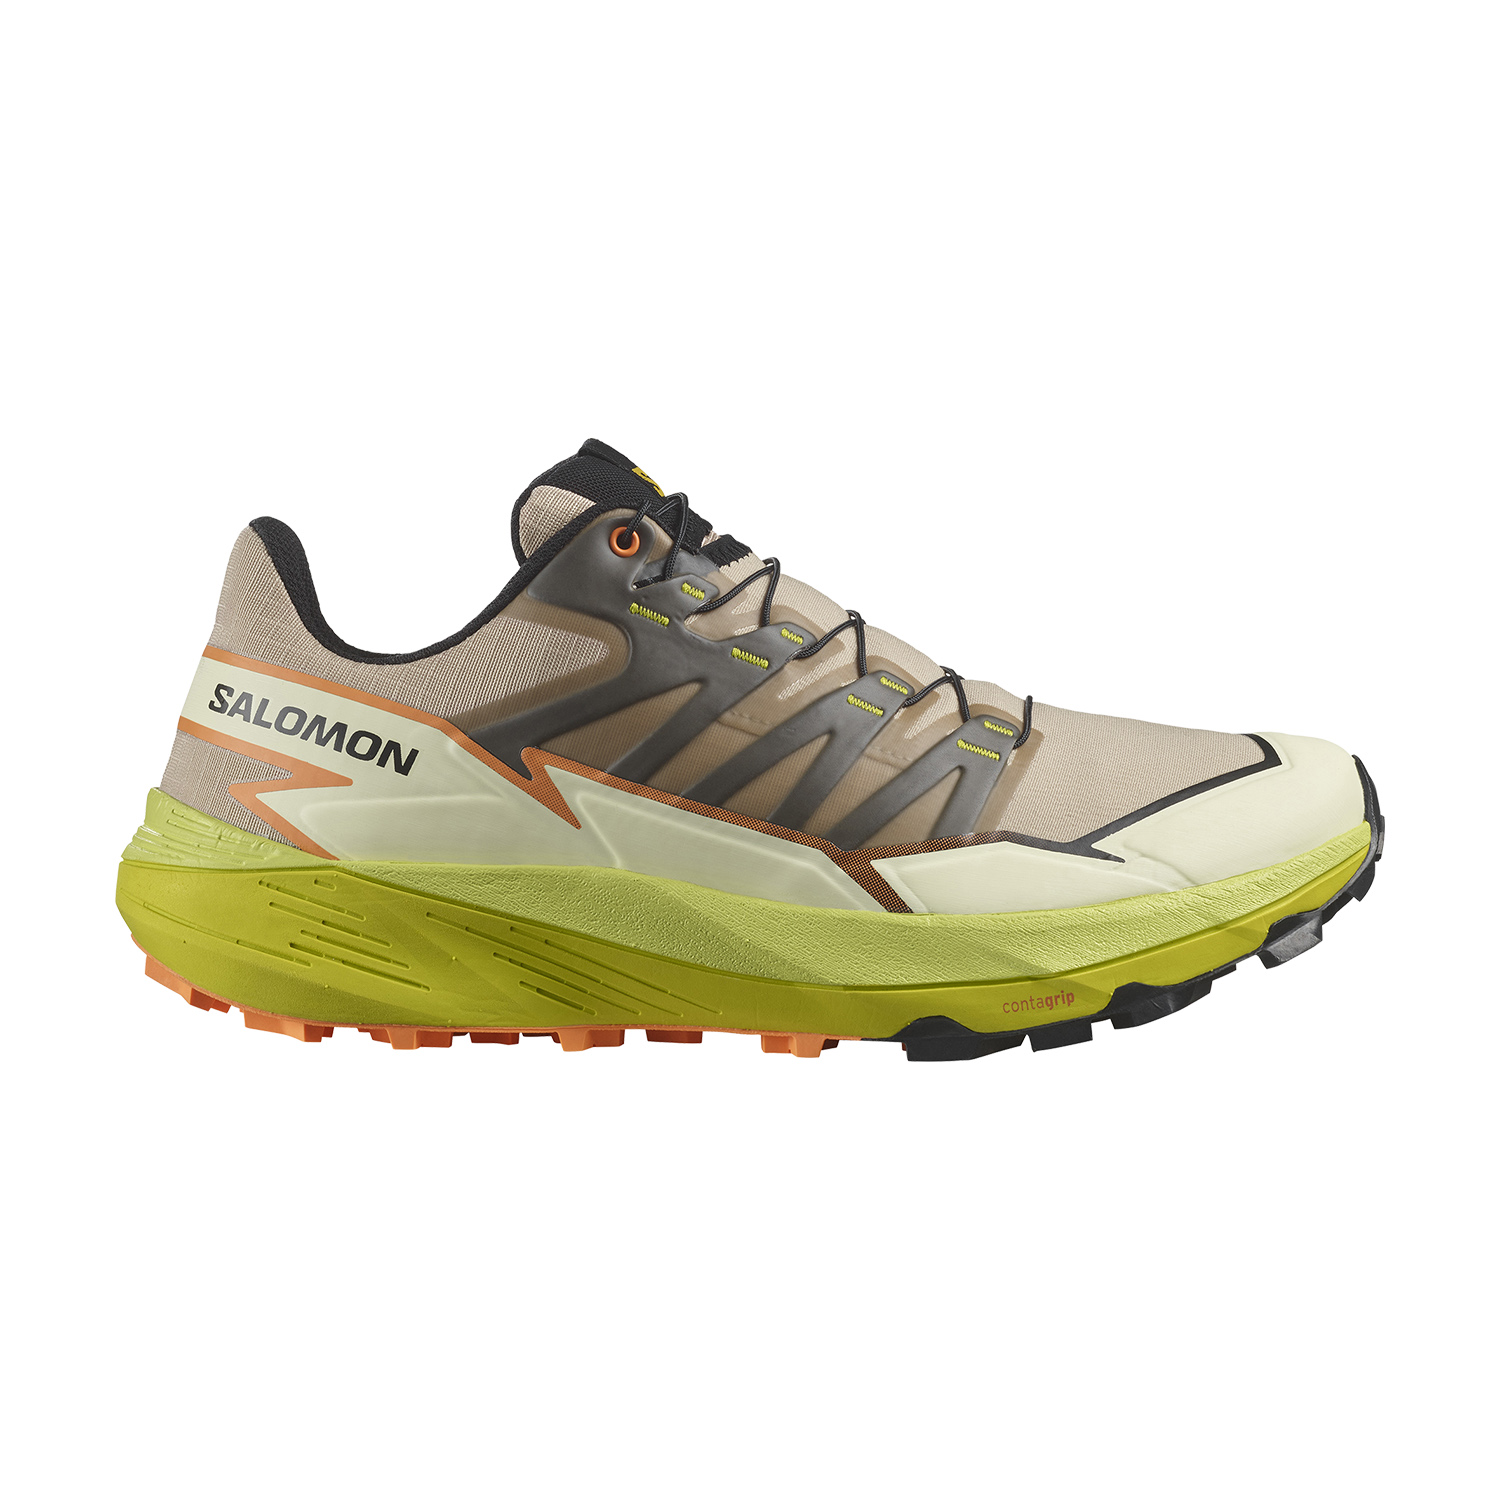 Thundercross GORE-TEX Trail Running Shoes - Men's